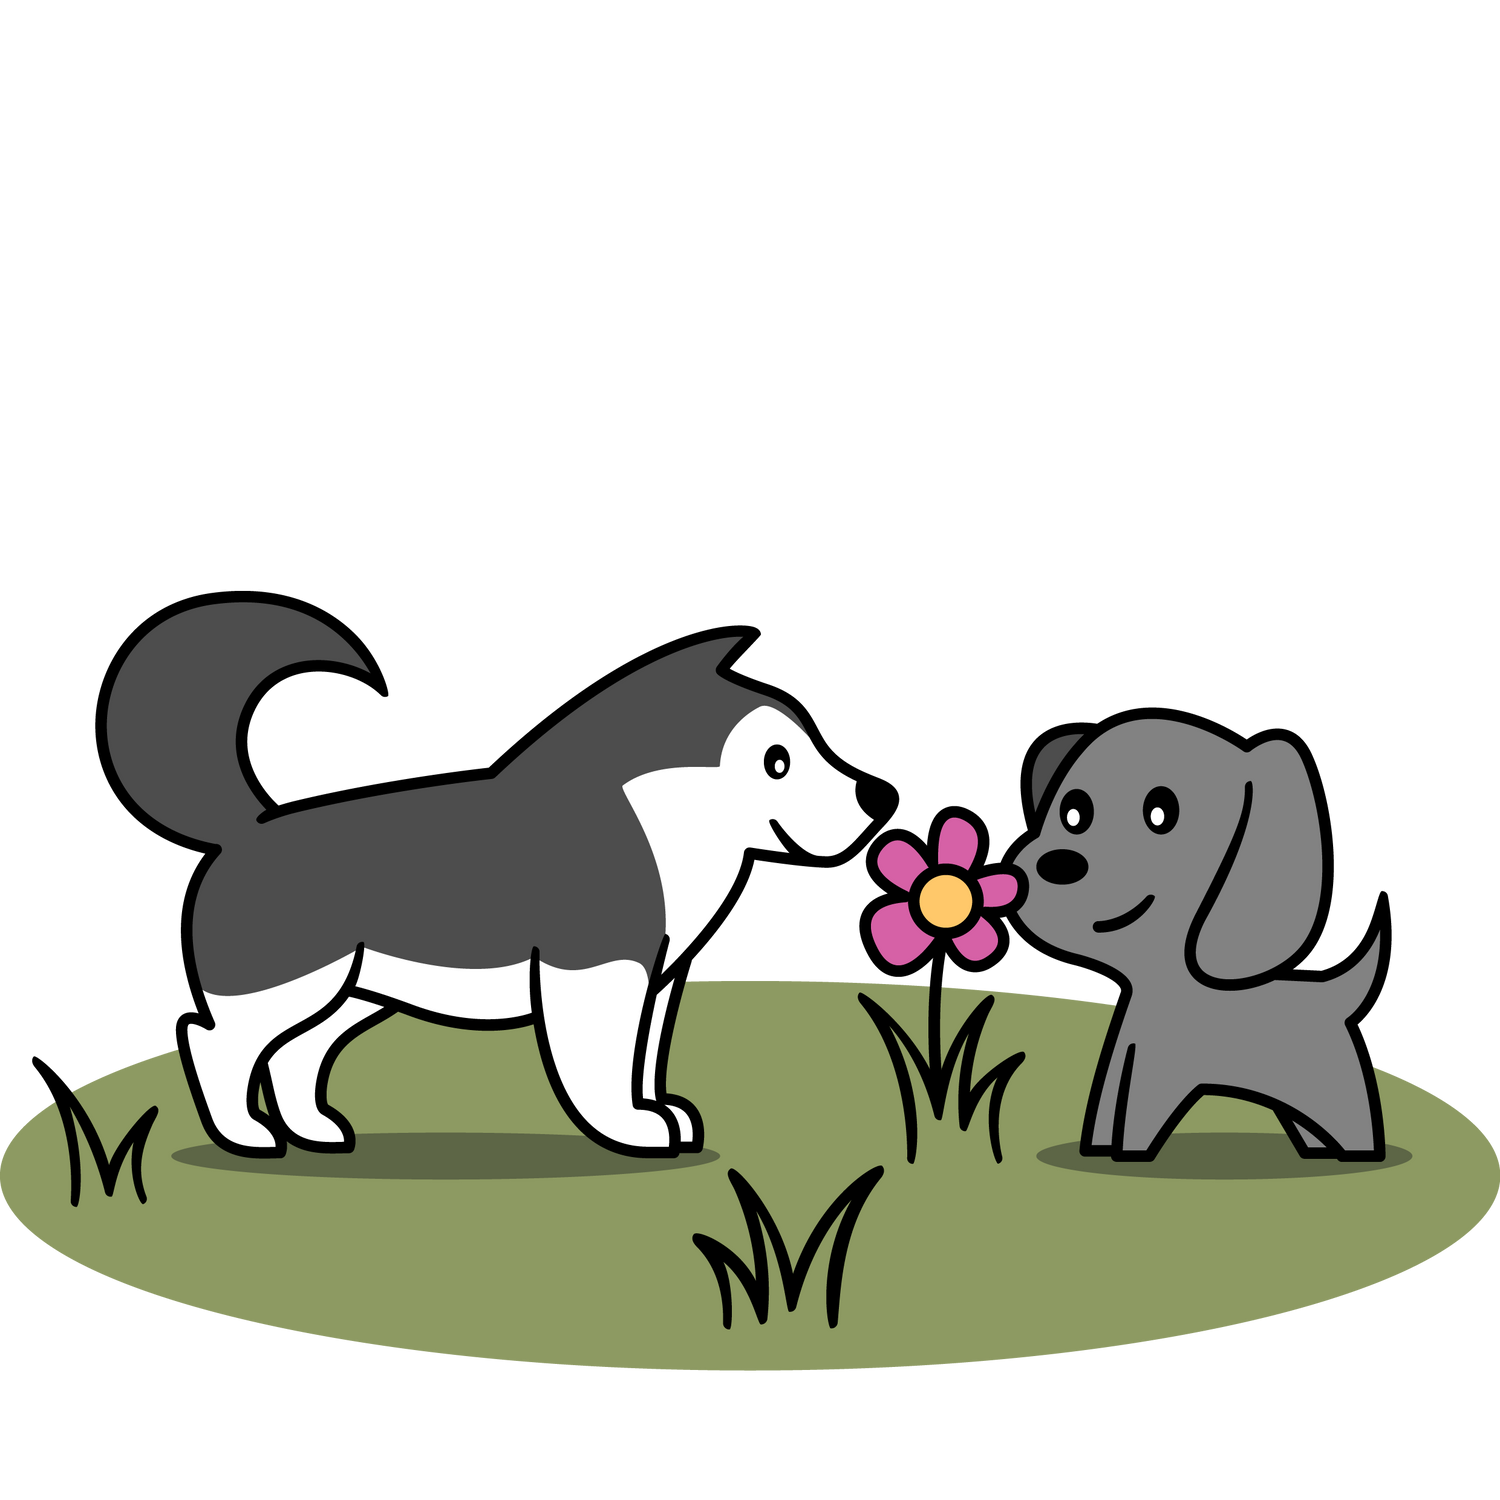 Wie nehmen Hunde freundlich den Kontakt auf? Jetzt Workshop buchen & mehr zu Hundebegegnungen lernen ✓ Dakini, deine Hundeschule in Winterthur & online.